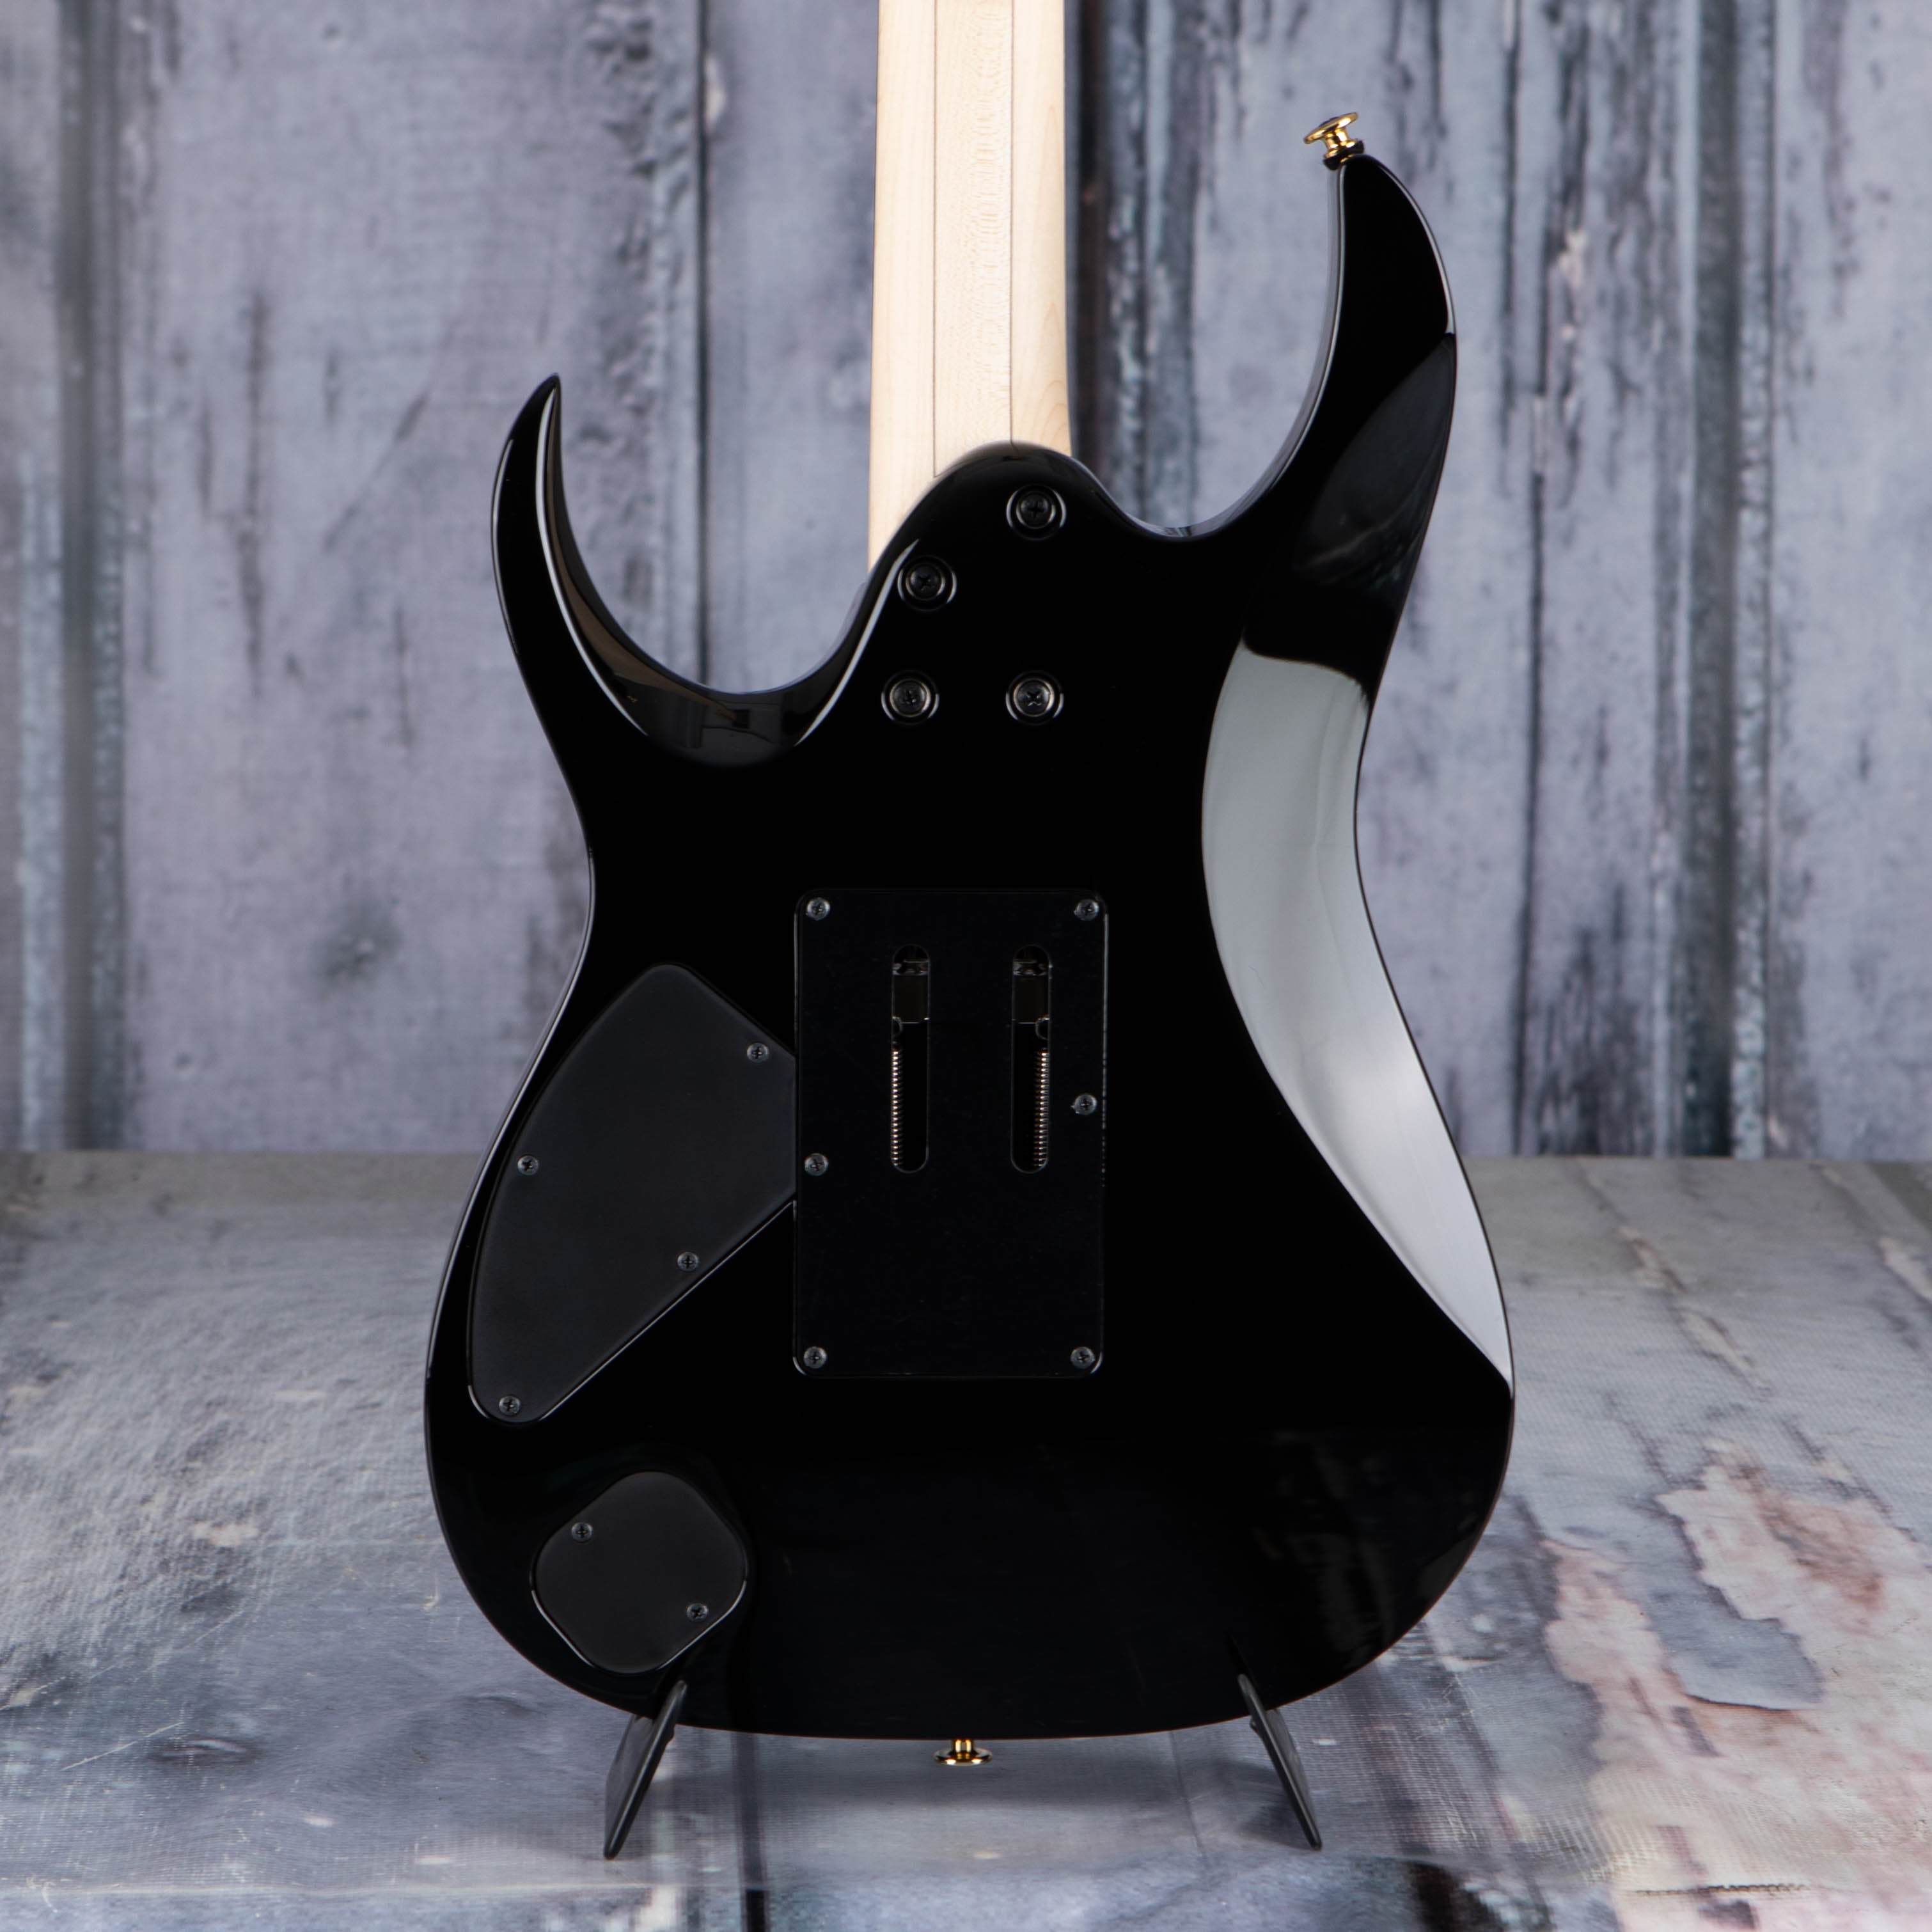 Ibanez Prestige RGA622XH Electric Guitar, Black, back closeup